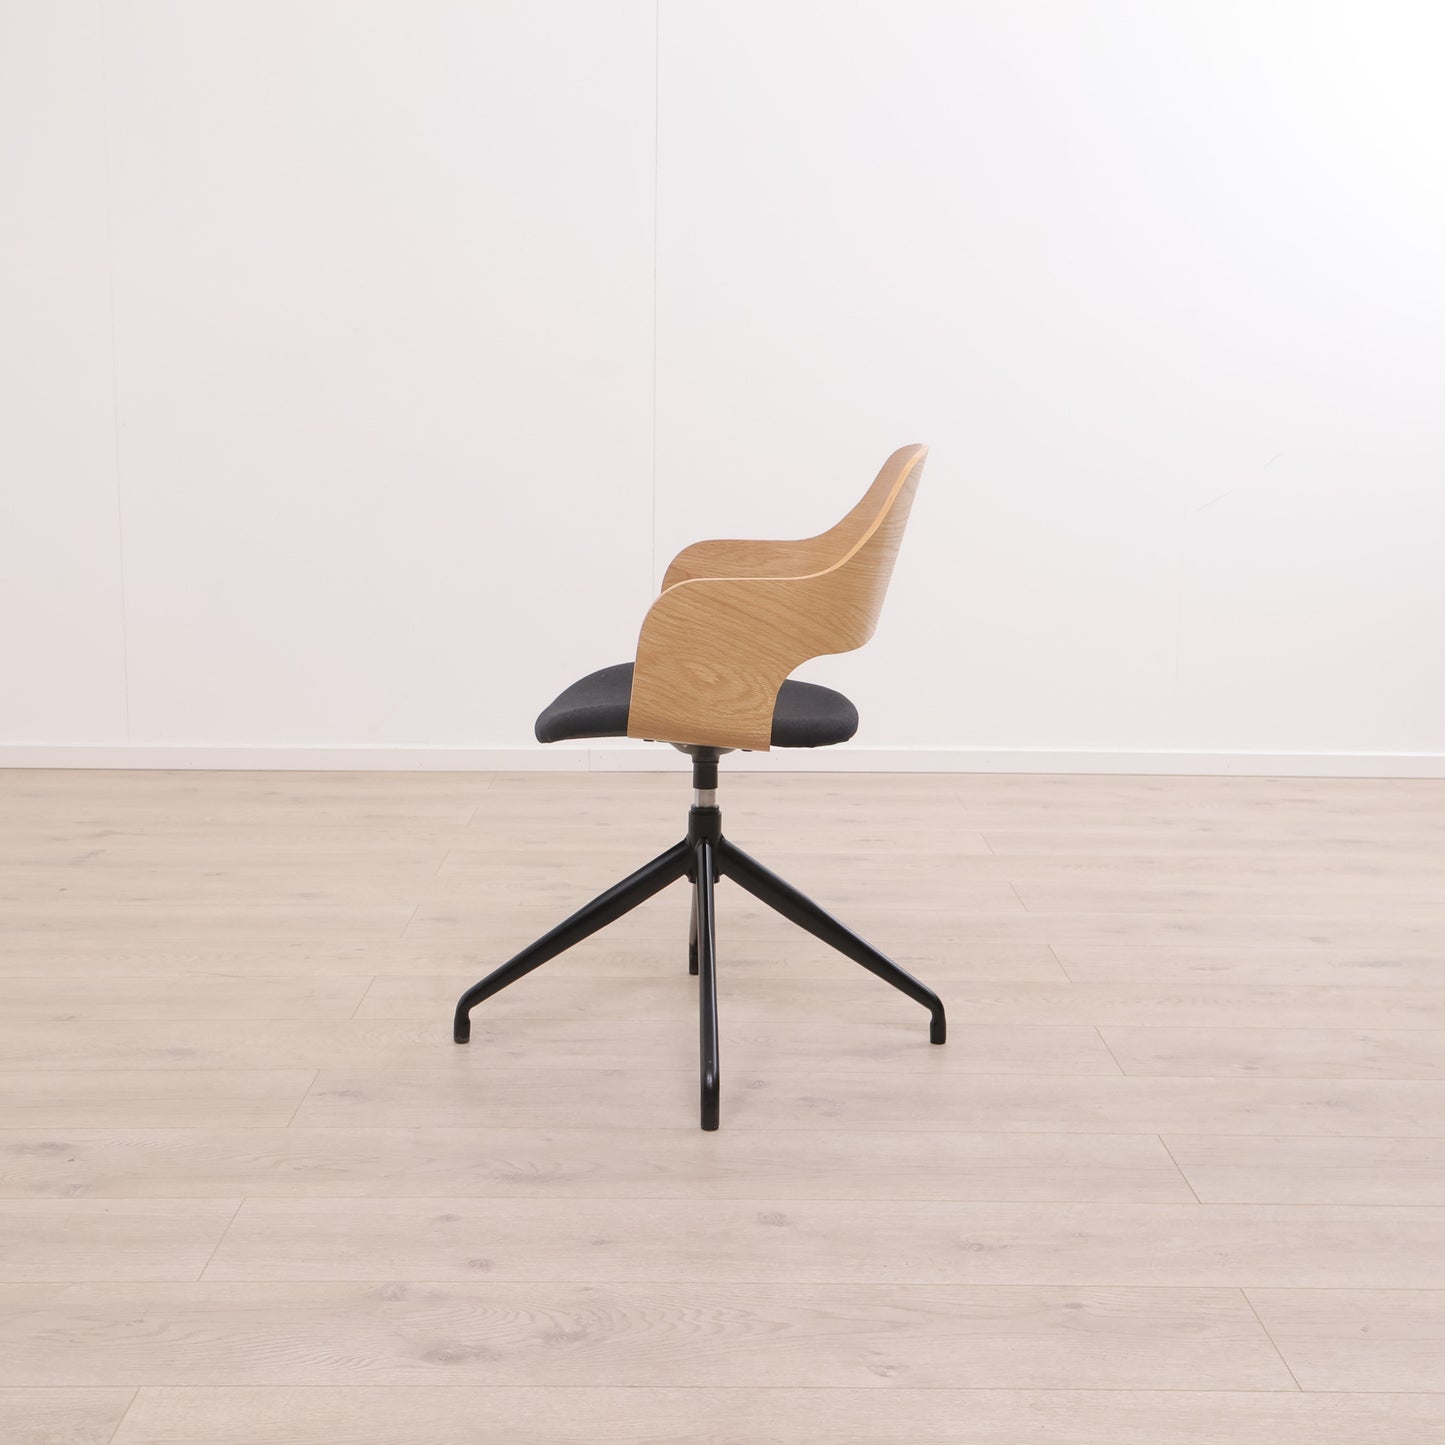 Kun brukt til utstilling | Hvidovre kontorstol i eik/sort farge med svingfot i stål